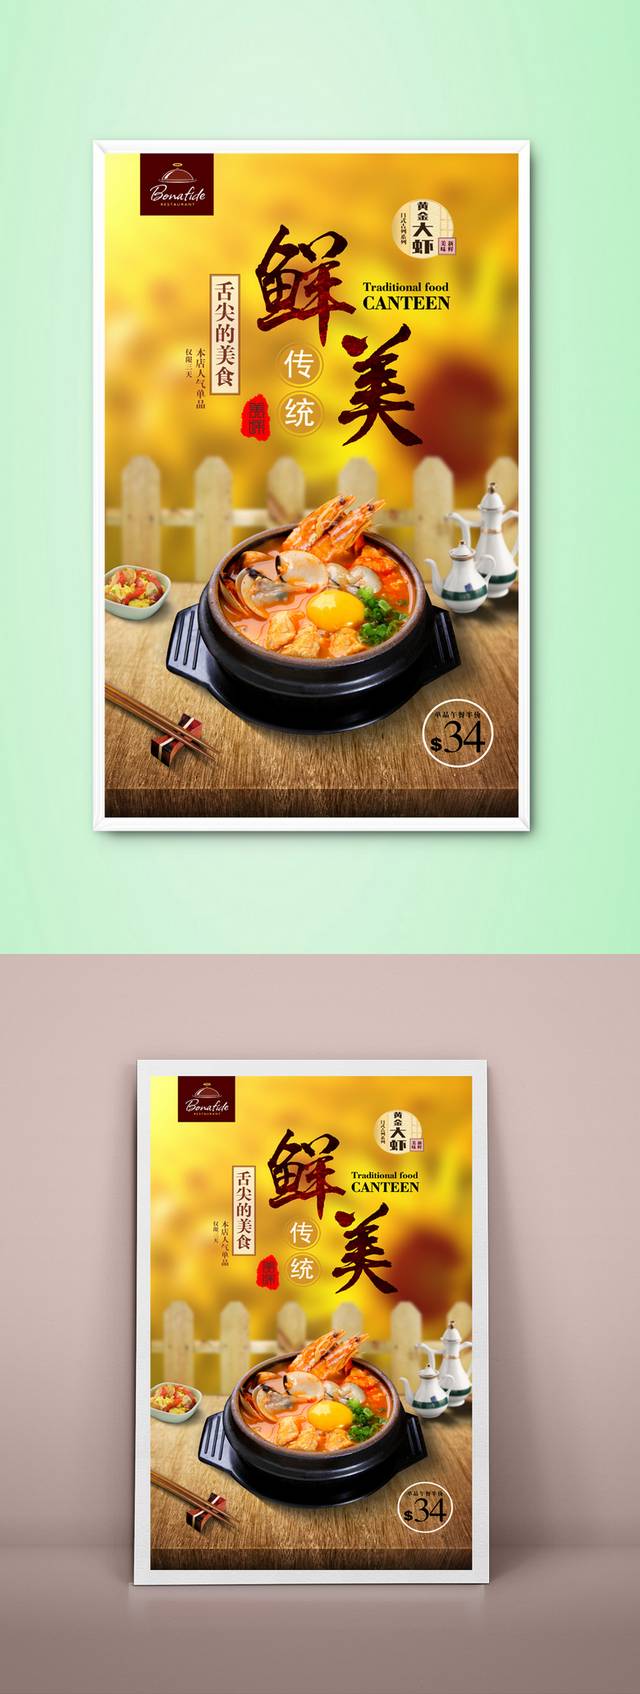 韩国泡菜锅促销海报设计